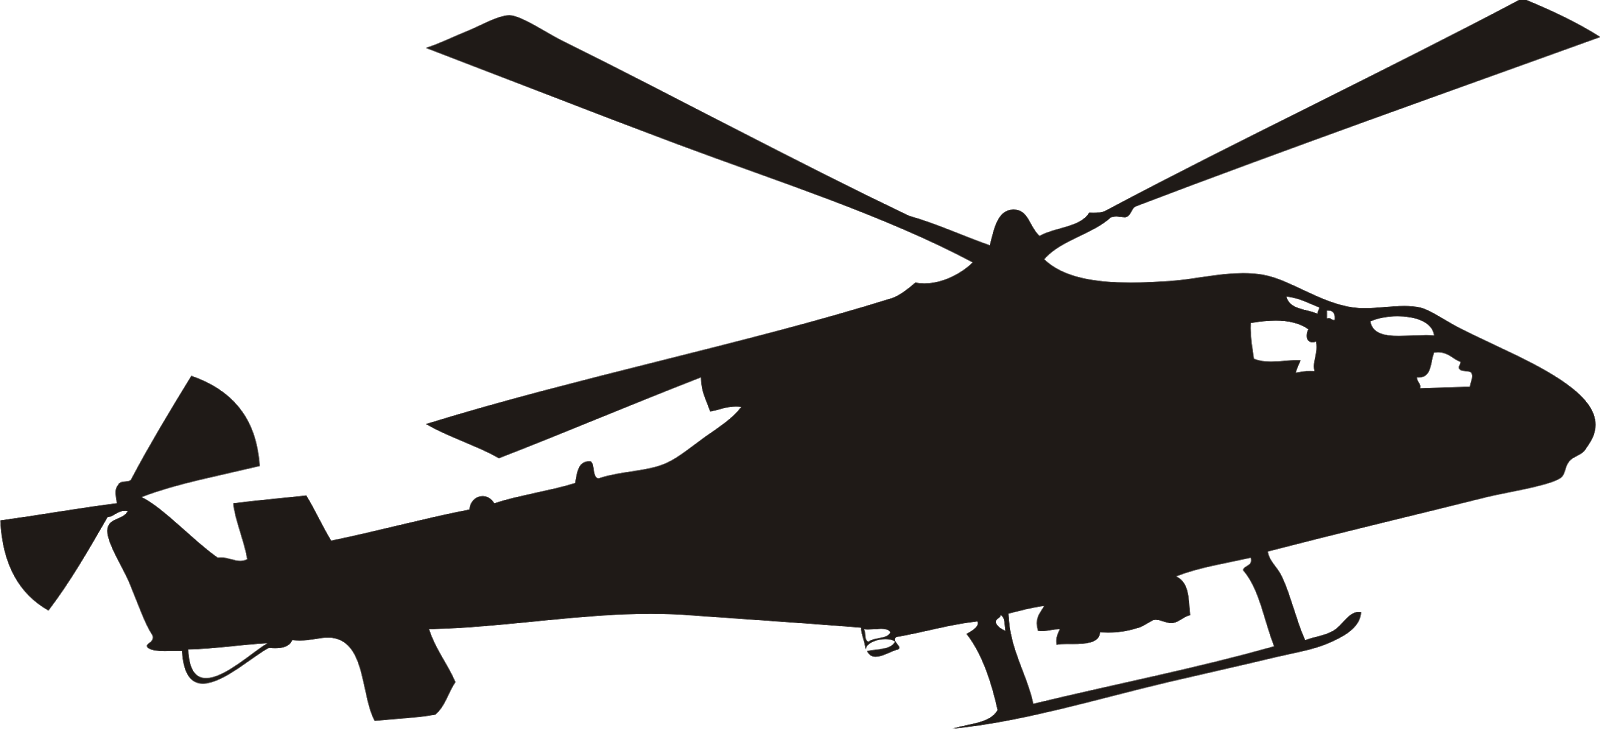 Download Gambar Helikopter Tempur Penumpan Format Vector Cdr Pesawat Udara